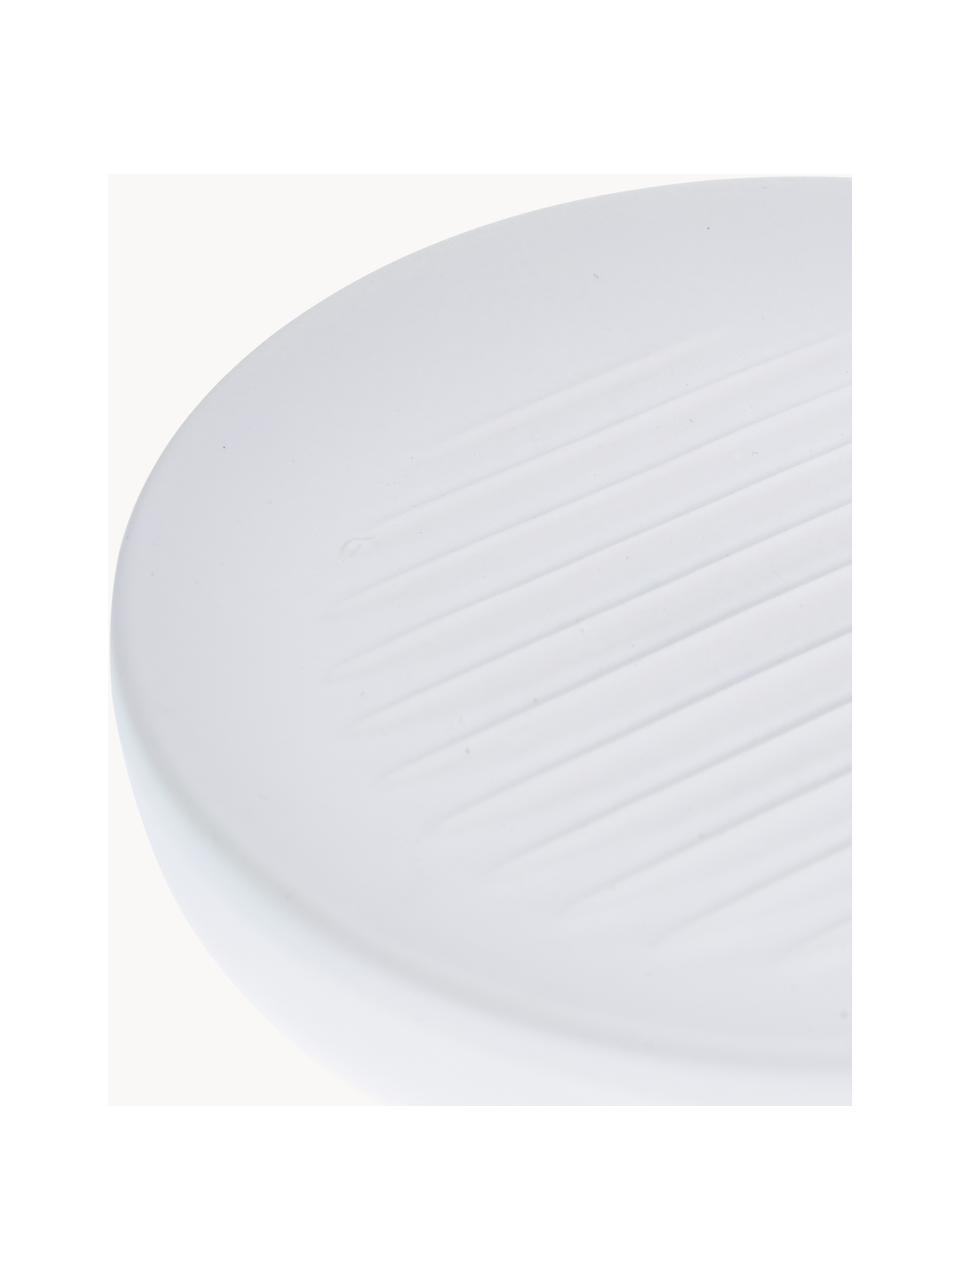 Seifenschale Ume aus Steingut mit Soft-Touch Oberfläche, Steingut überzogen mit Soft-Touch-Oberfläche (Kunststoff), Weiß, Ø 12 x H 3 cm